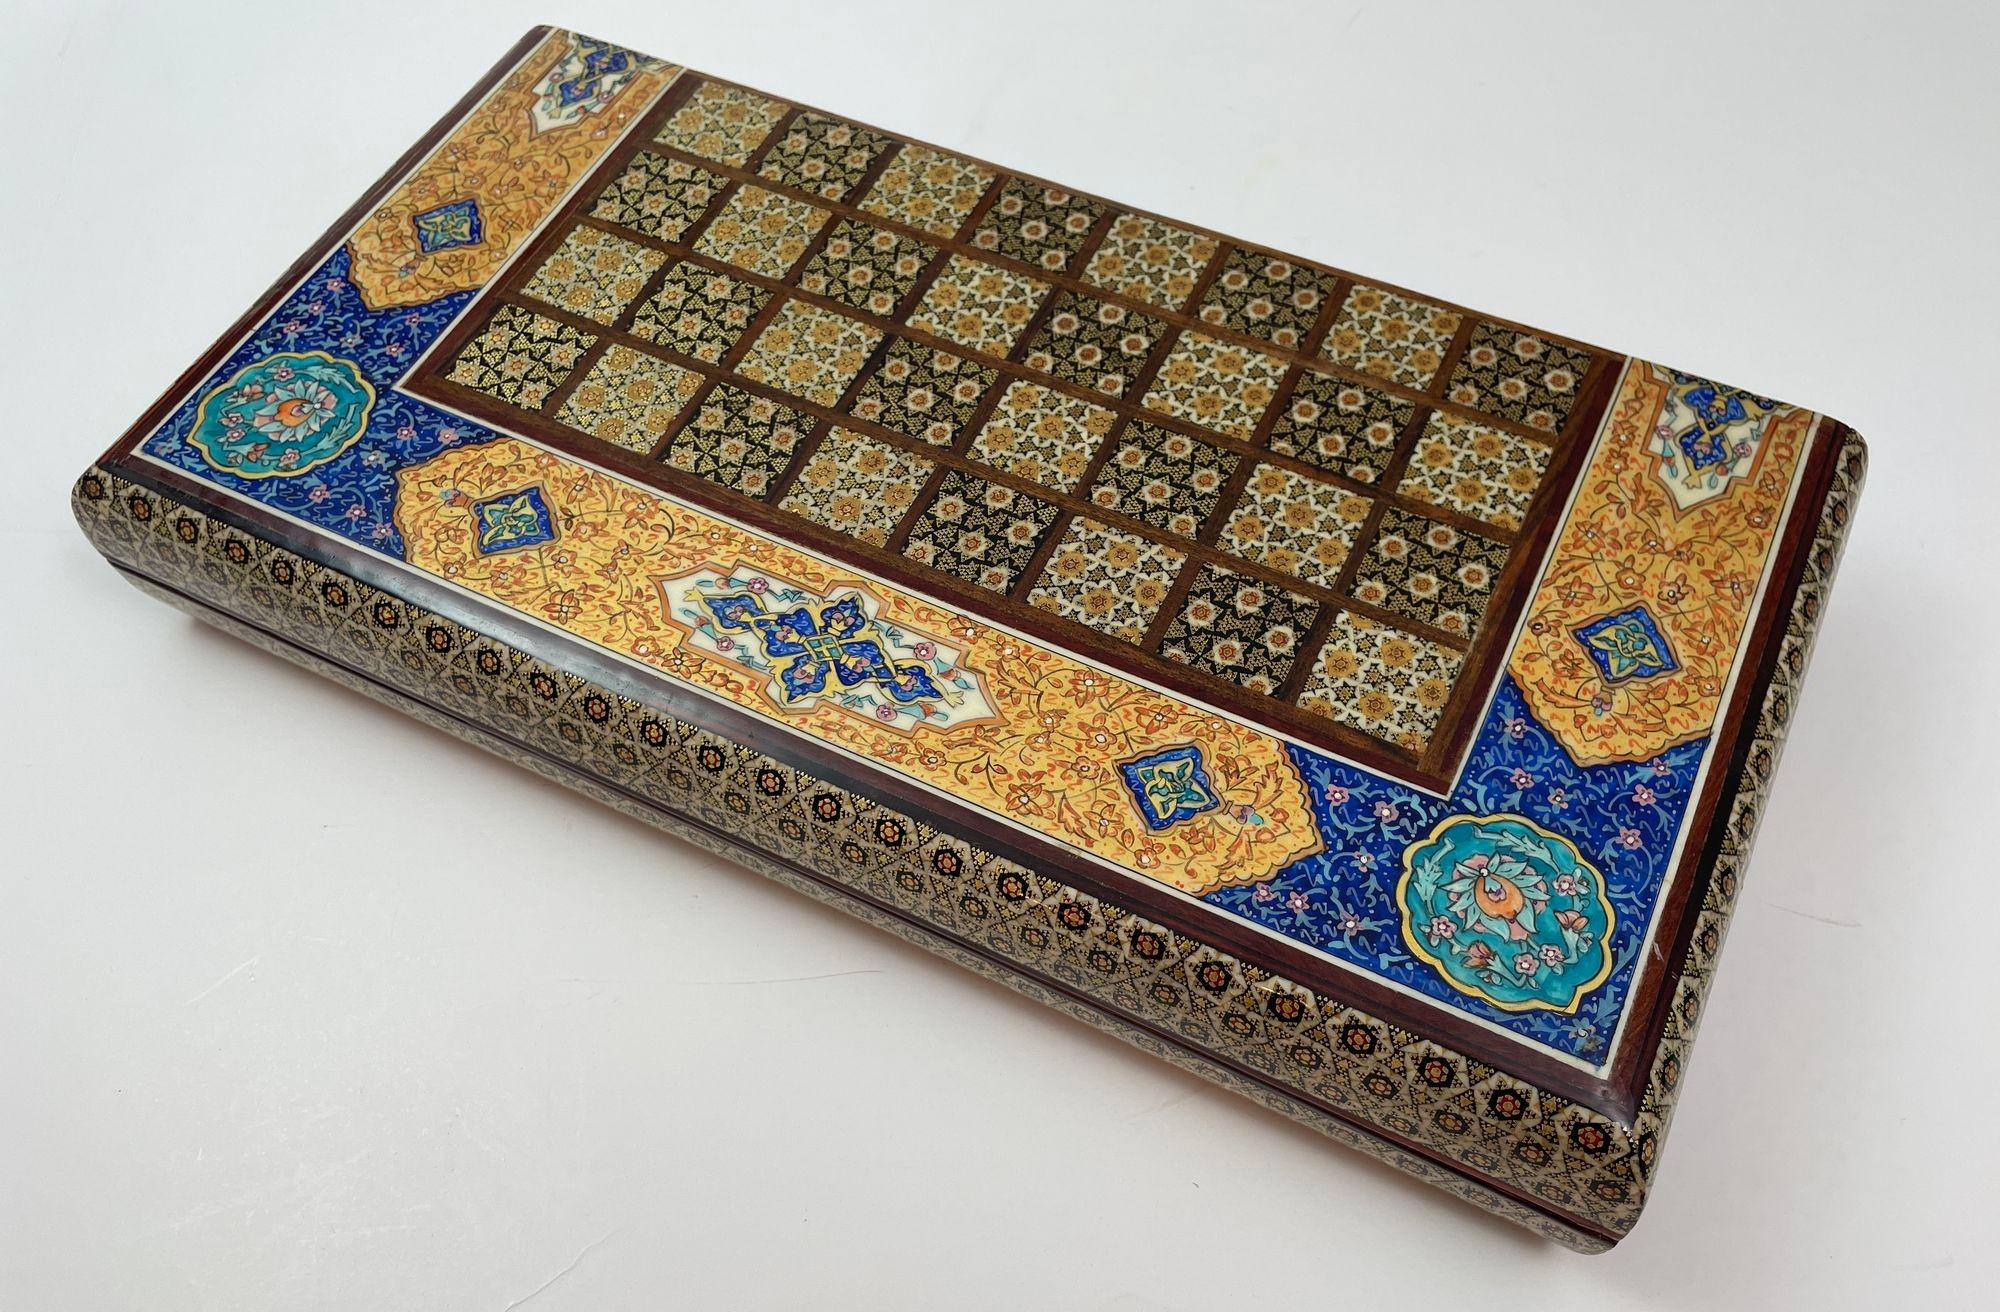 Marokkanisches maurisch-persisches Intarsien-Mikro-Mosaik-Backgammon- und Schachbrett.
Aufwändig eingelegte, handgefertigte maurisch-persische Backgammon- und Schachspielschachtel.
Handgefertigte schöne Khatam-Holzkiste aus dem Nahen Osten, bedeckt